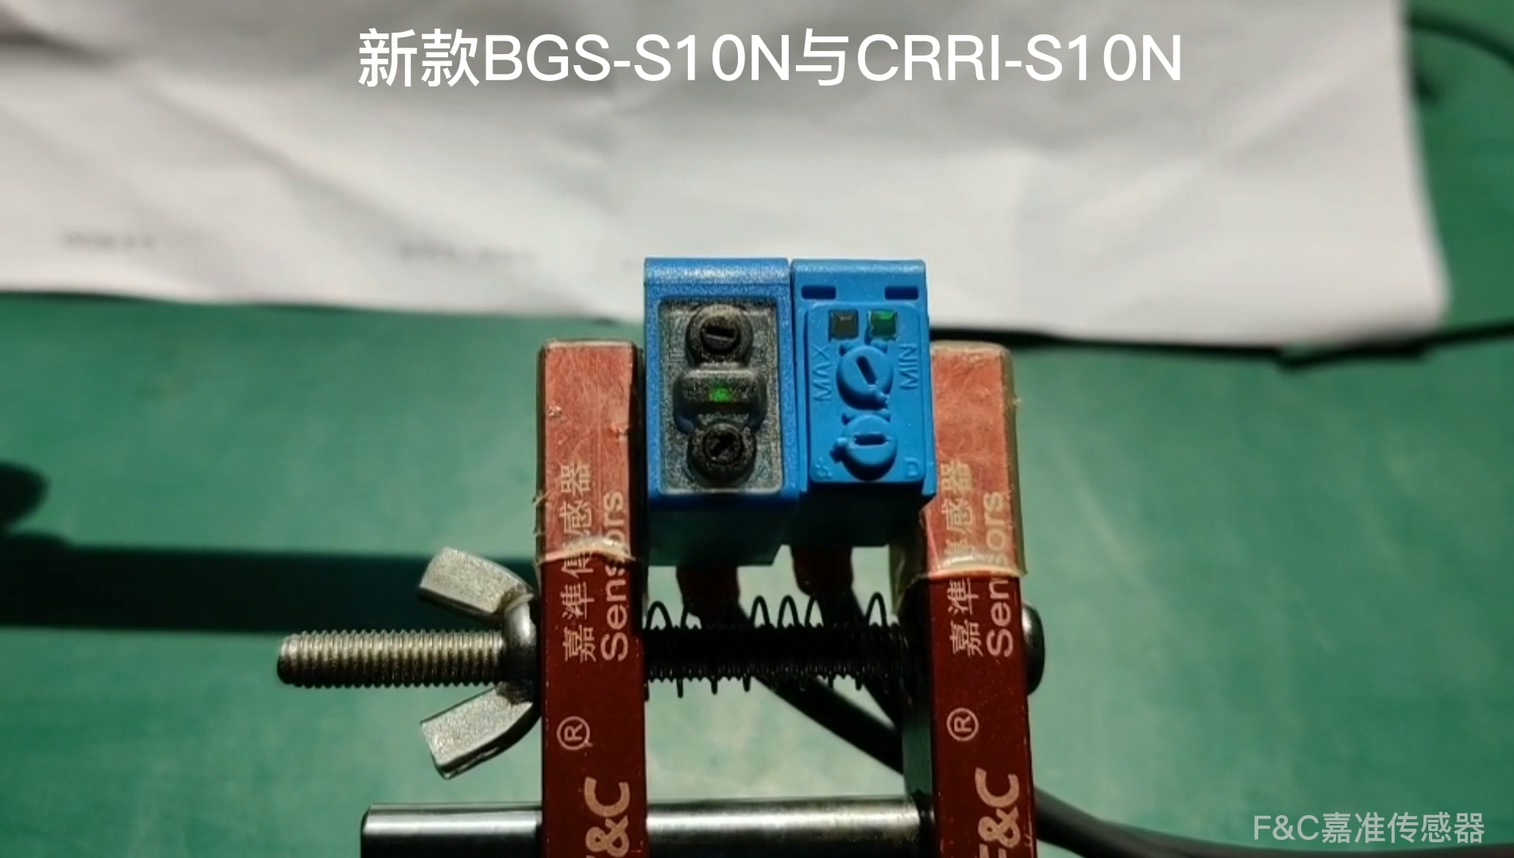 BGS-S10N与CRRI-S10N进行抗强光测试